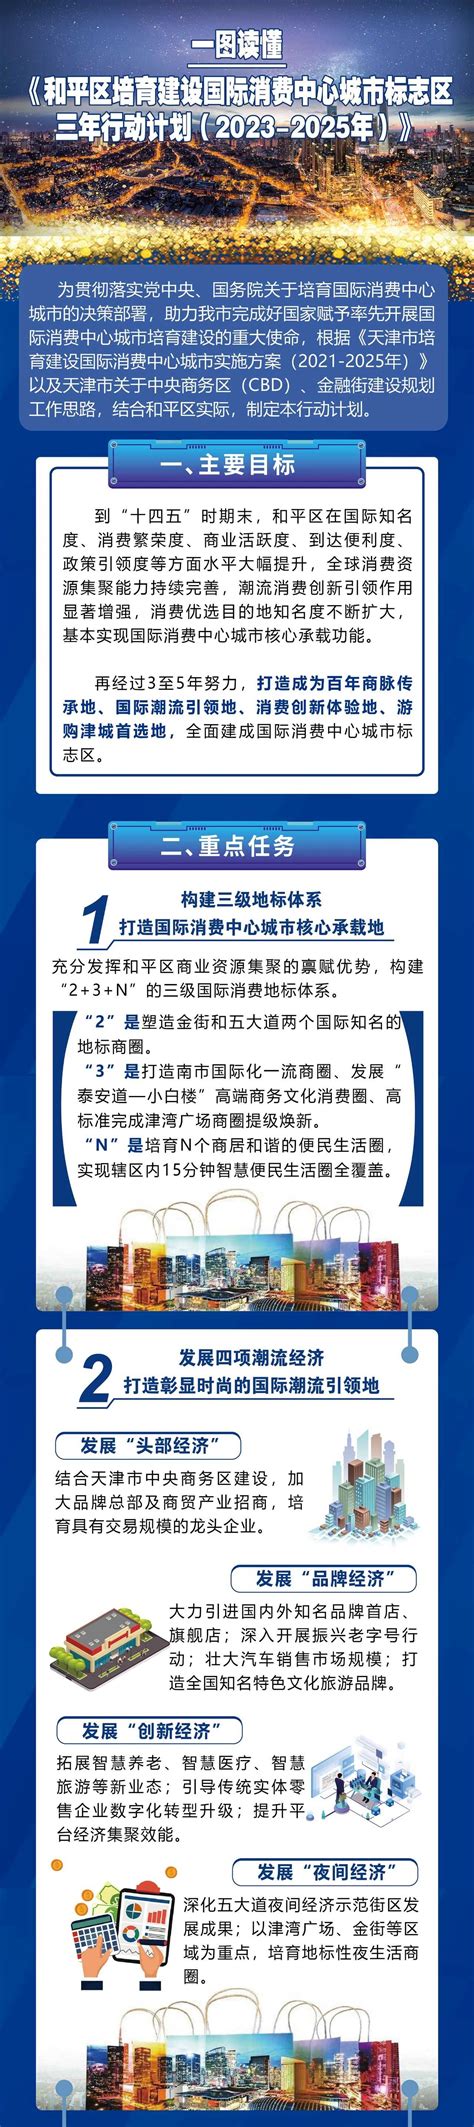 一图读懂 《和平区培育建设国际消费中心城市标志区三年行动计划(2023-2025年)》_天津市和平区人民政府